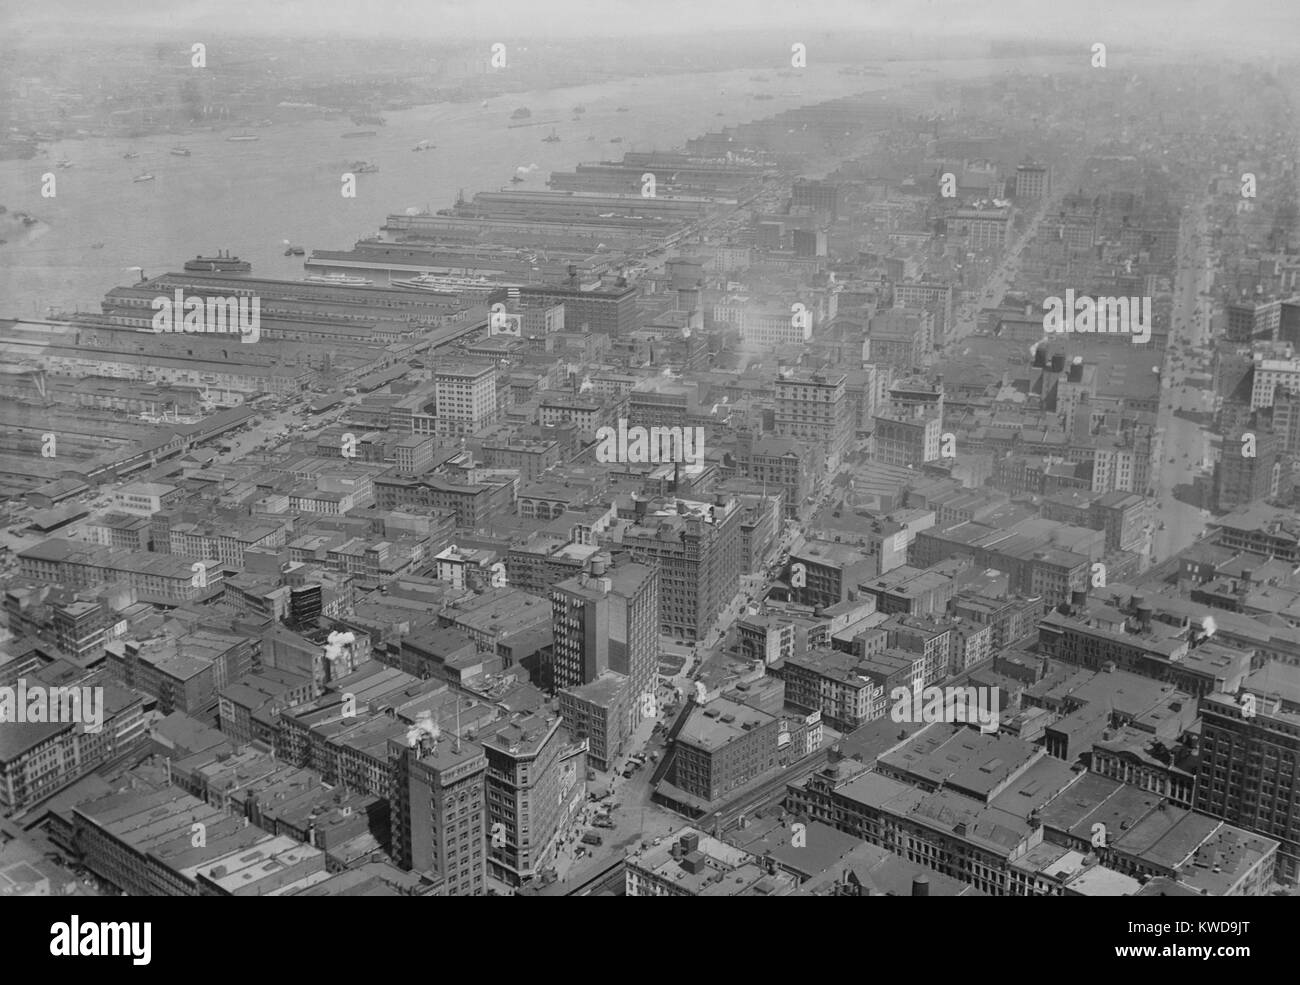 Vue vers le nord-ouest depuis le Woolworth Building de Manhattan, ch. 1920. Tribeca, (triangle au-dessous de Canal Street), était alors un district industriel avec des entrepôts et des jetées sur le bord de l'Hudson (BSLOC 2016 10 201) Banque D'Images